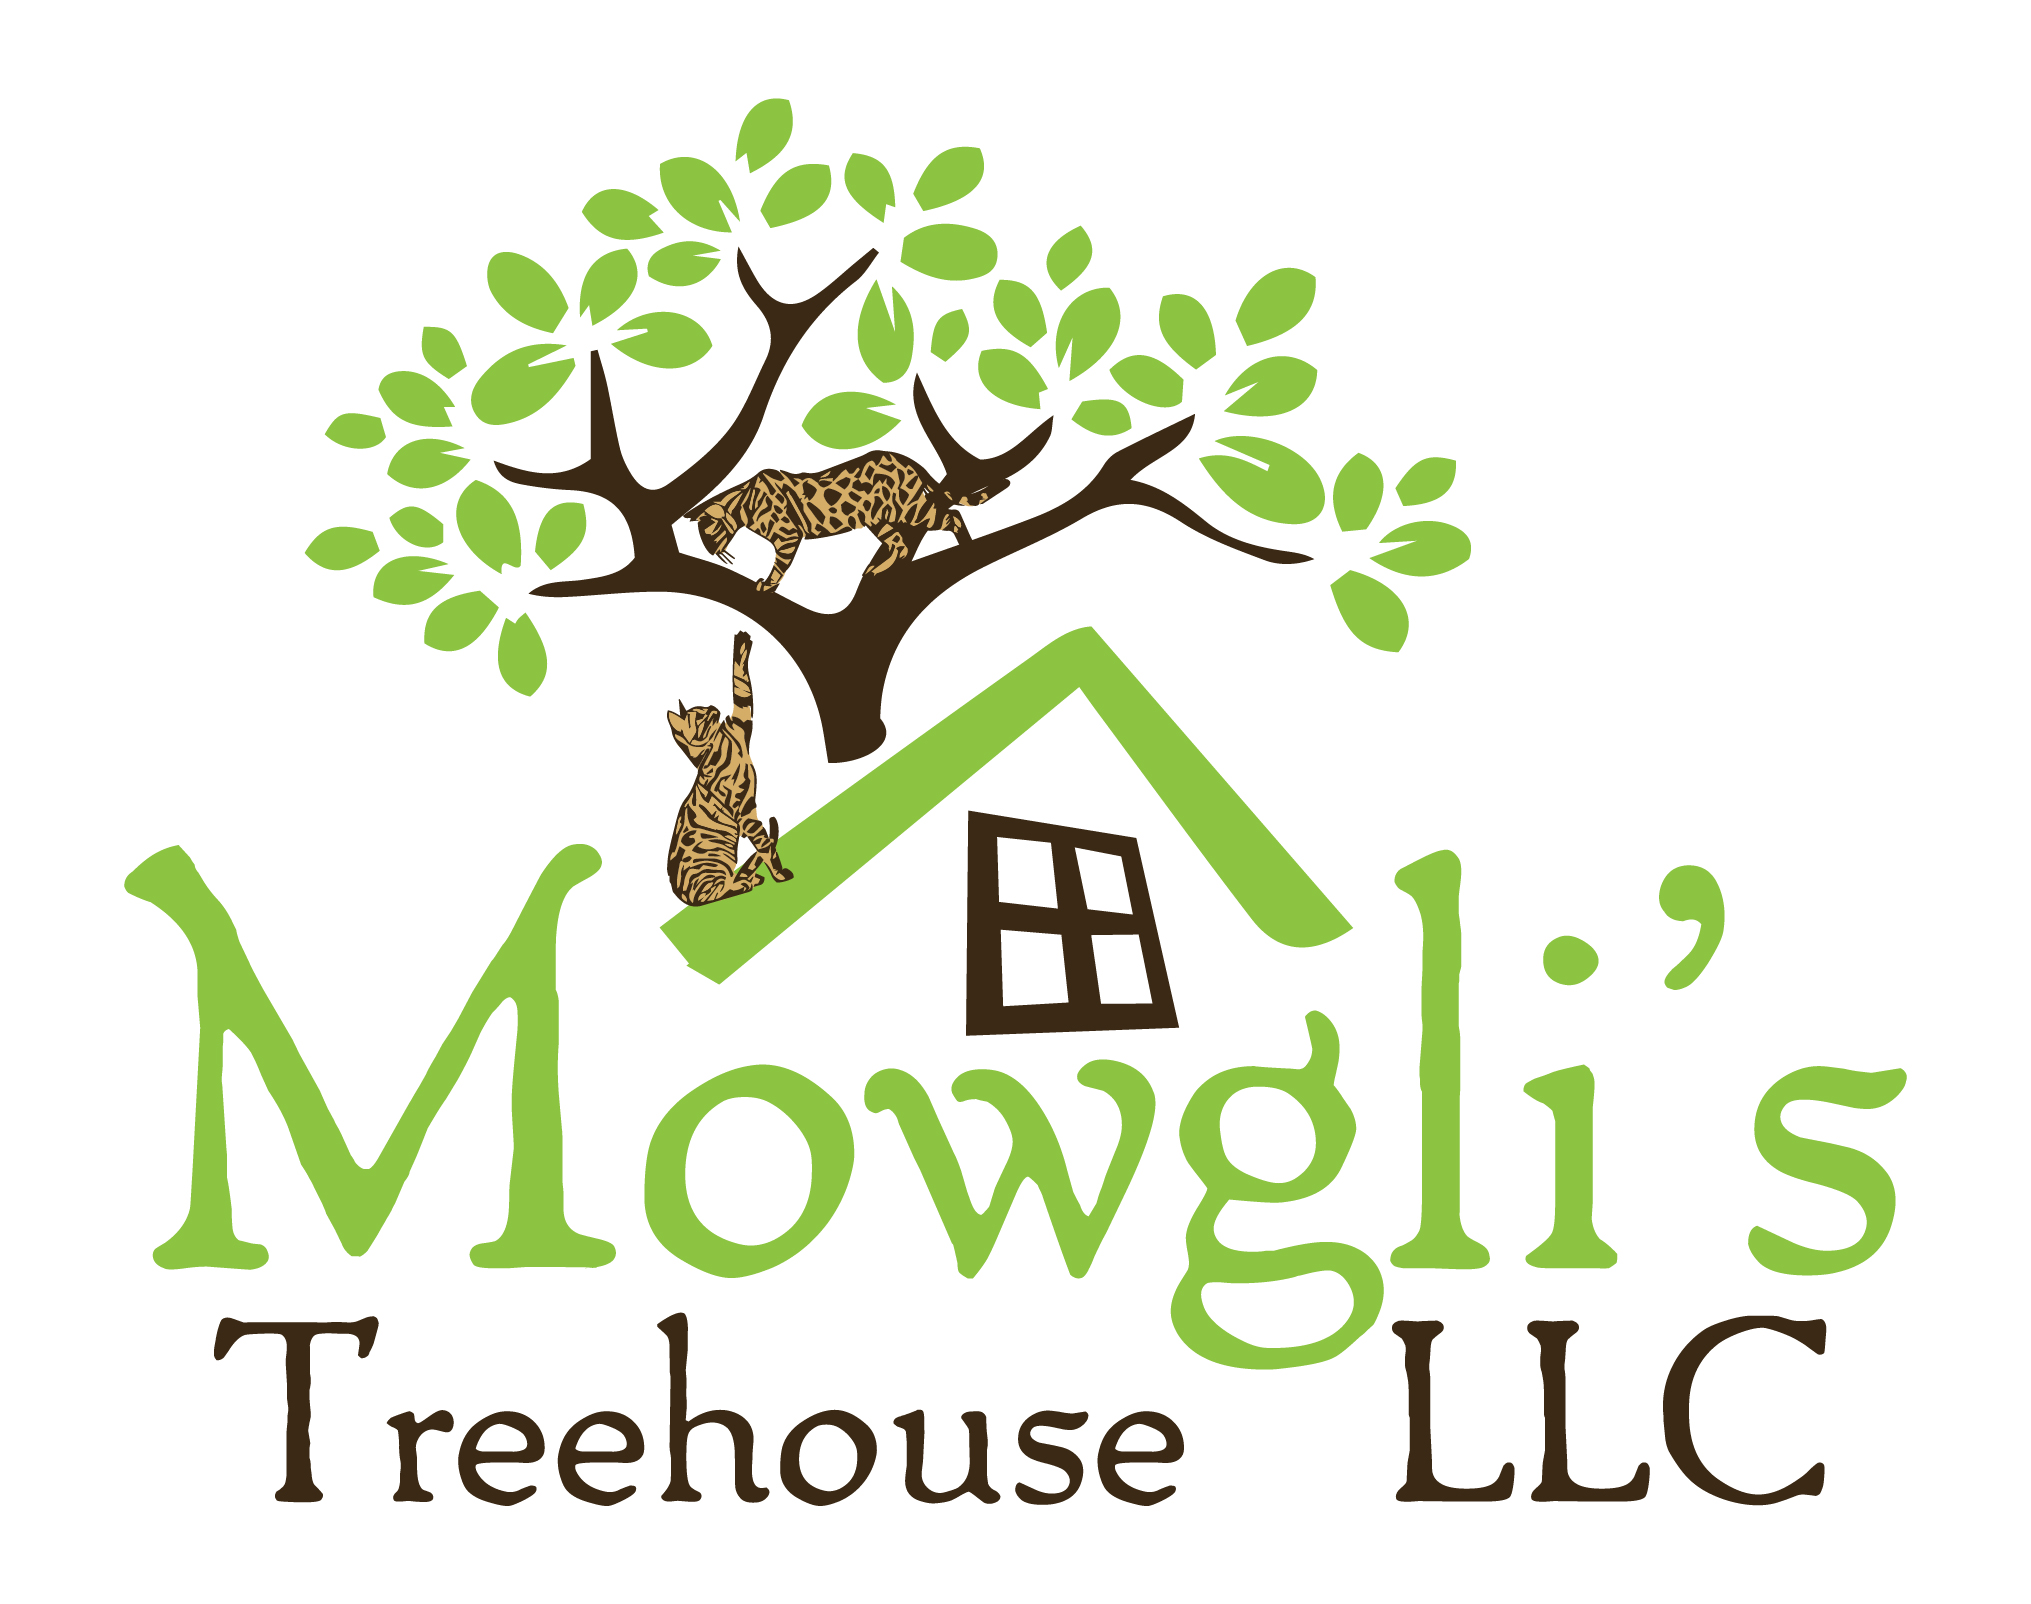 Mowgli’s Treehouse L2, LLC